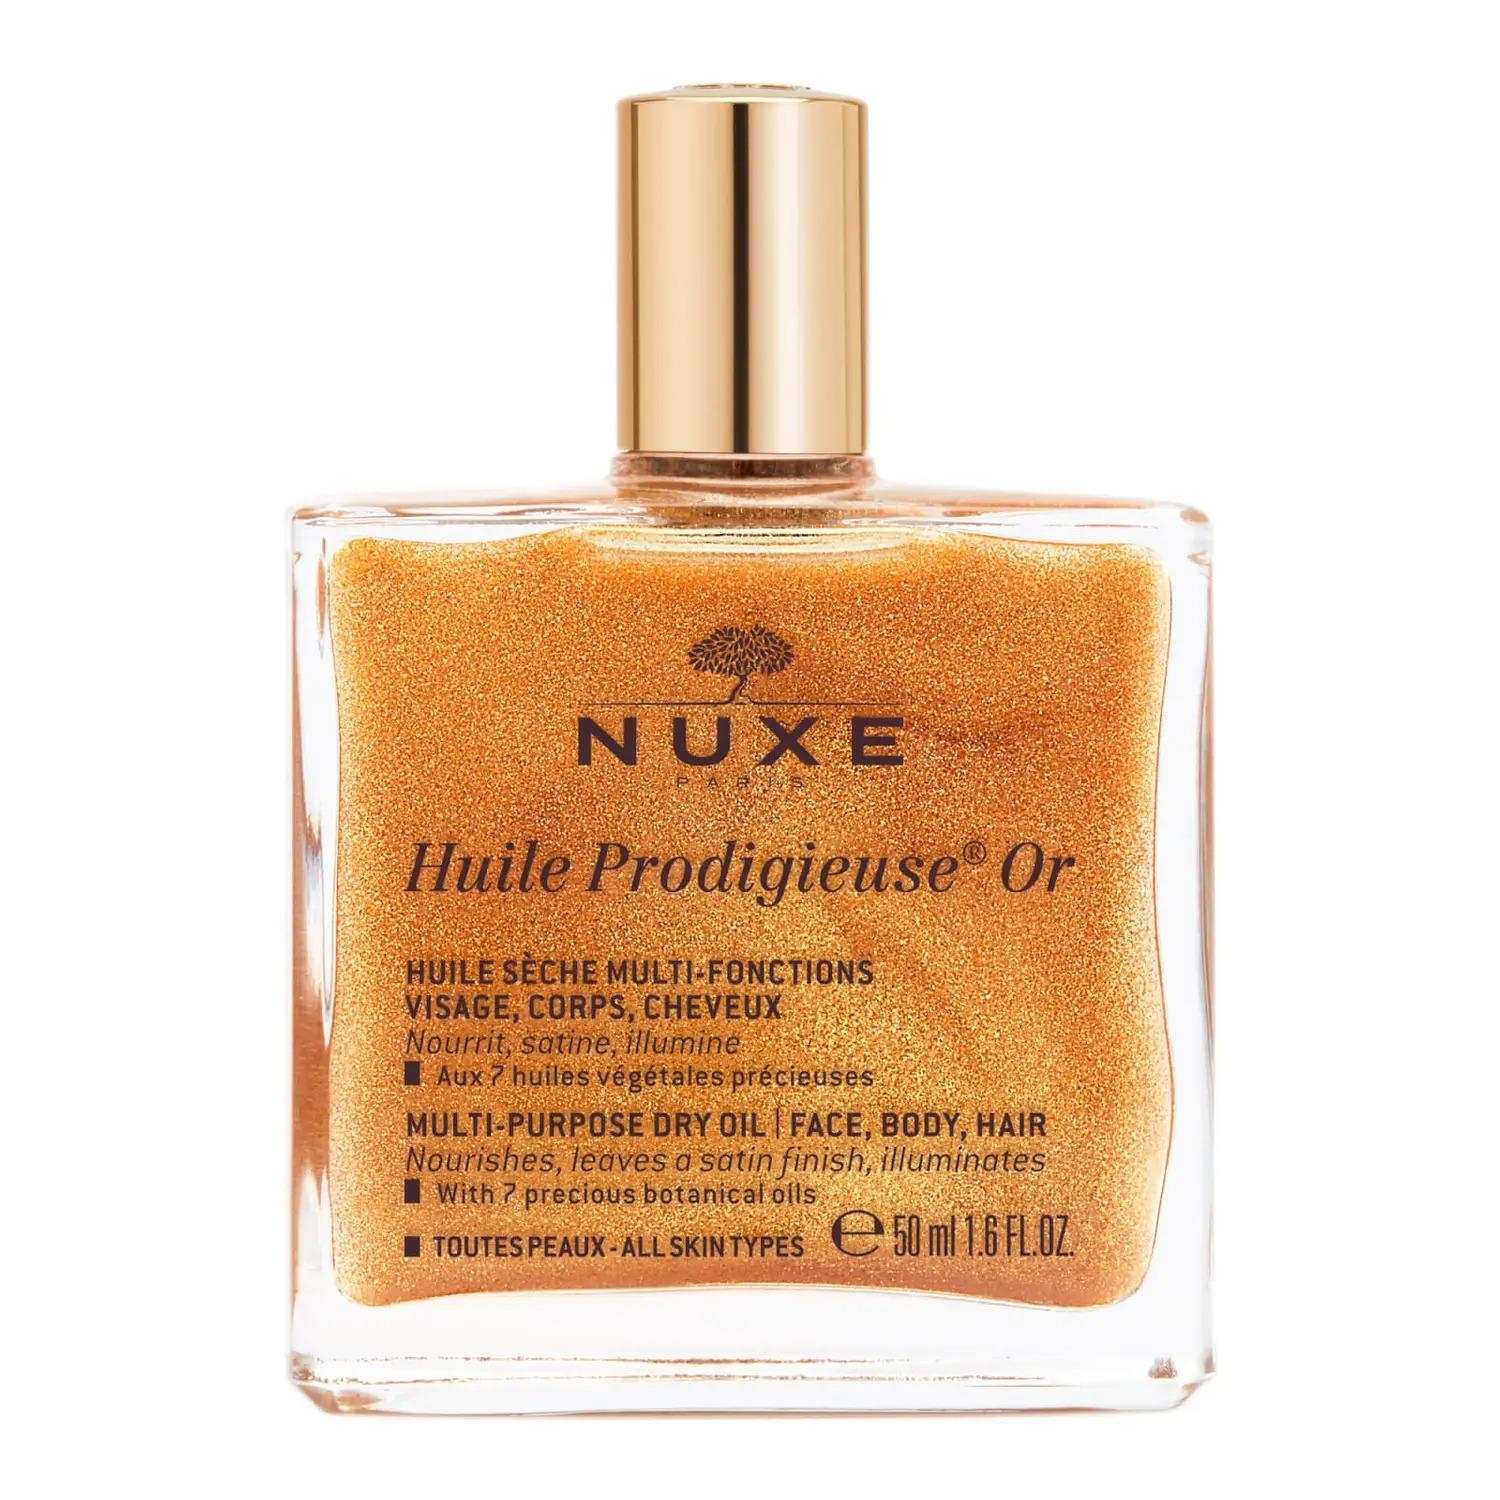 Nuxe Huile Prodigieuse или многофункциональное сухое масло 50 мл